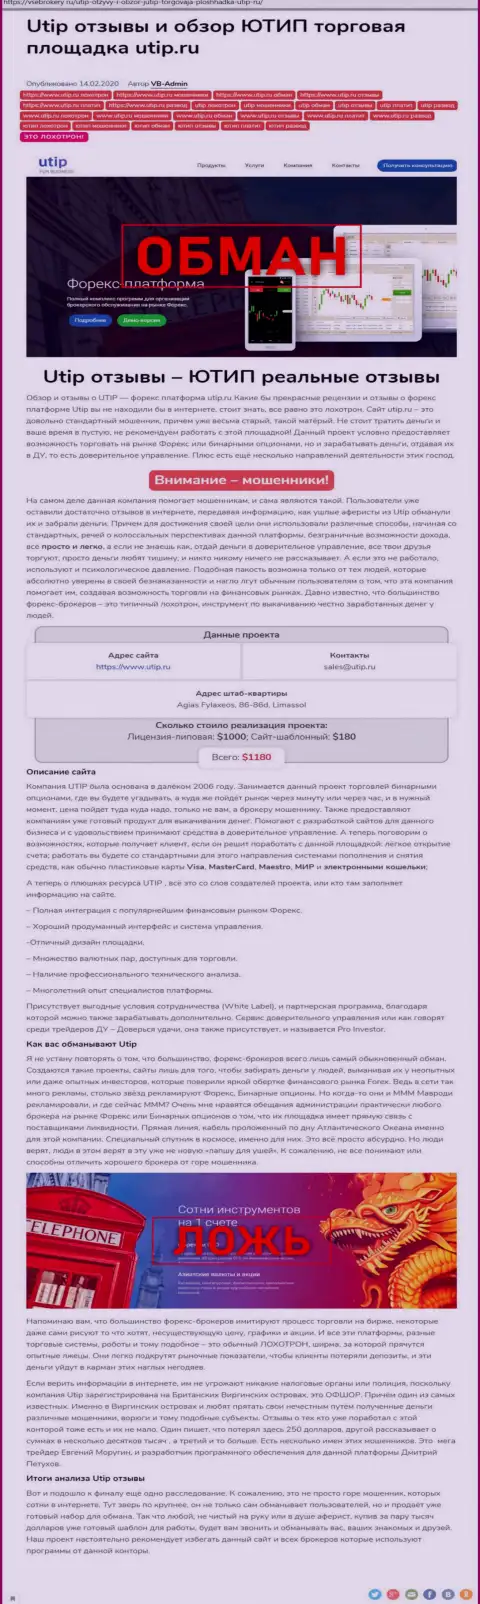 Обзор мошеннических действий scam-компании UTIP Ru - АФЕРИСТЫ !!!